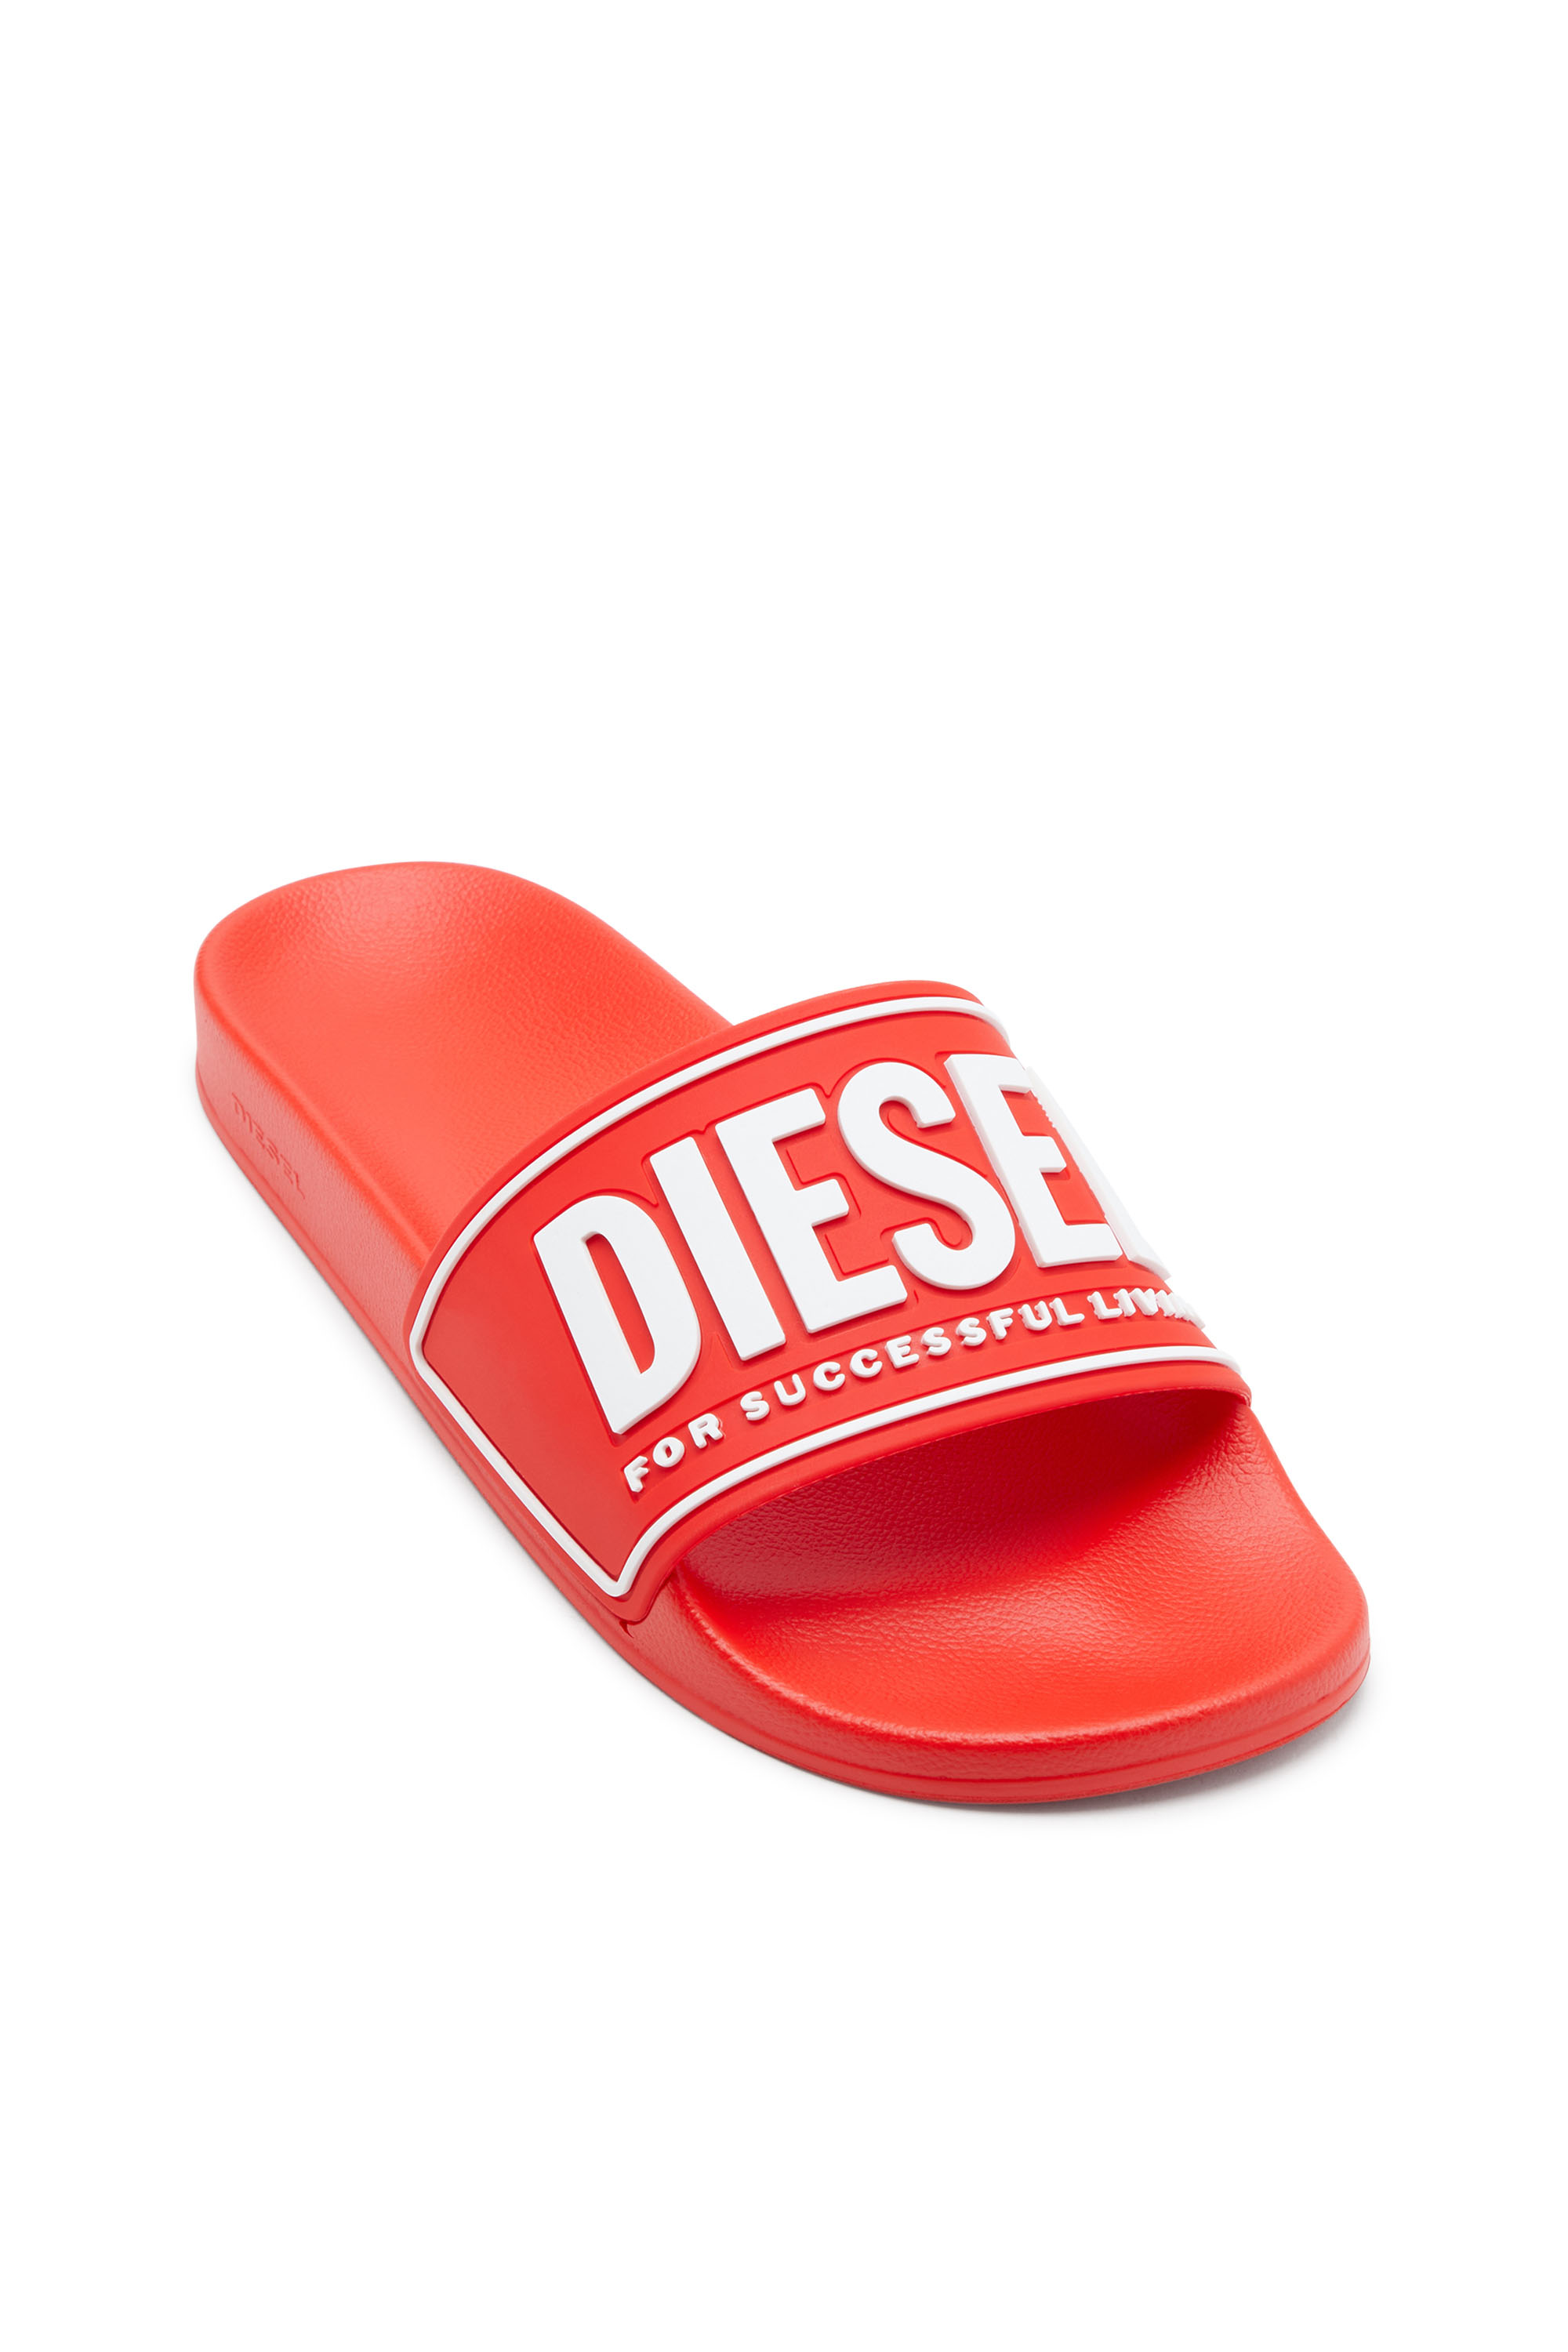 Diesel - SA-MAYEMI CC W, Rosso - Image 6